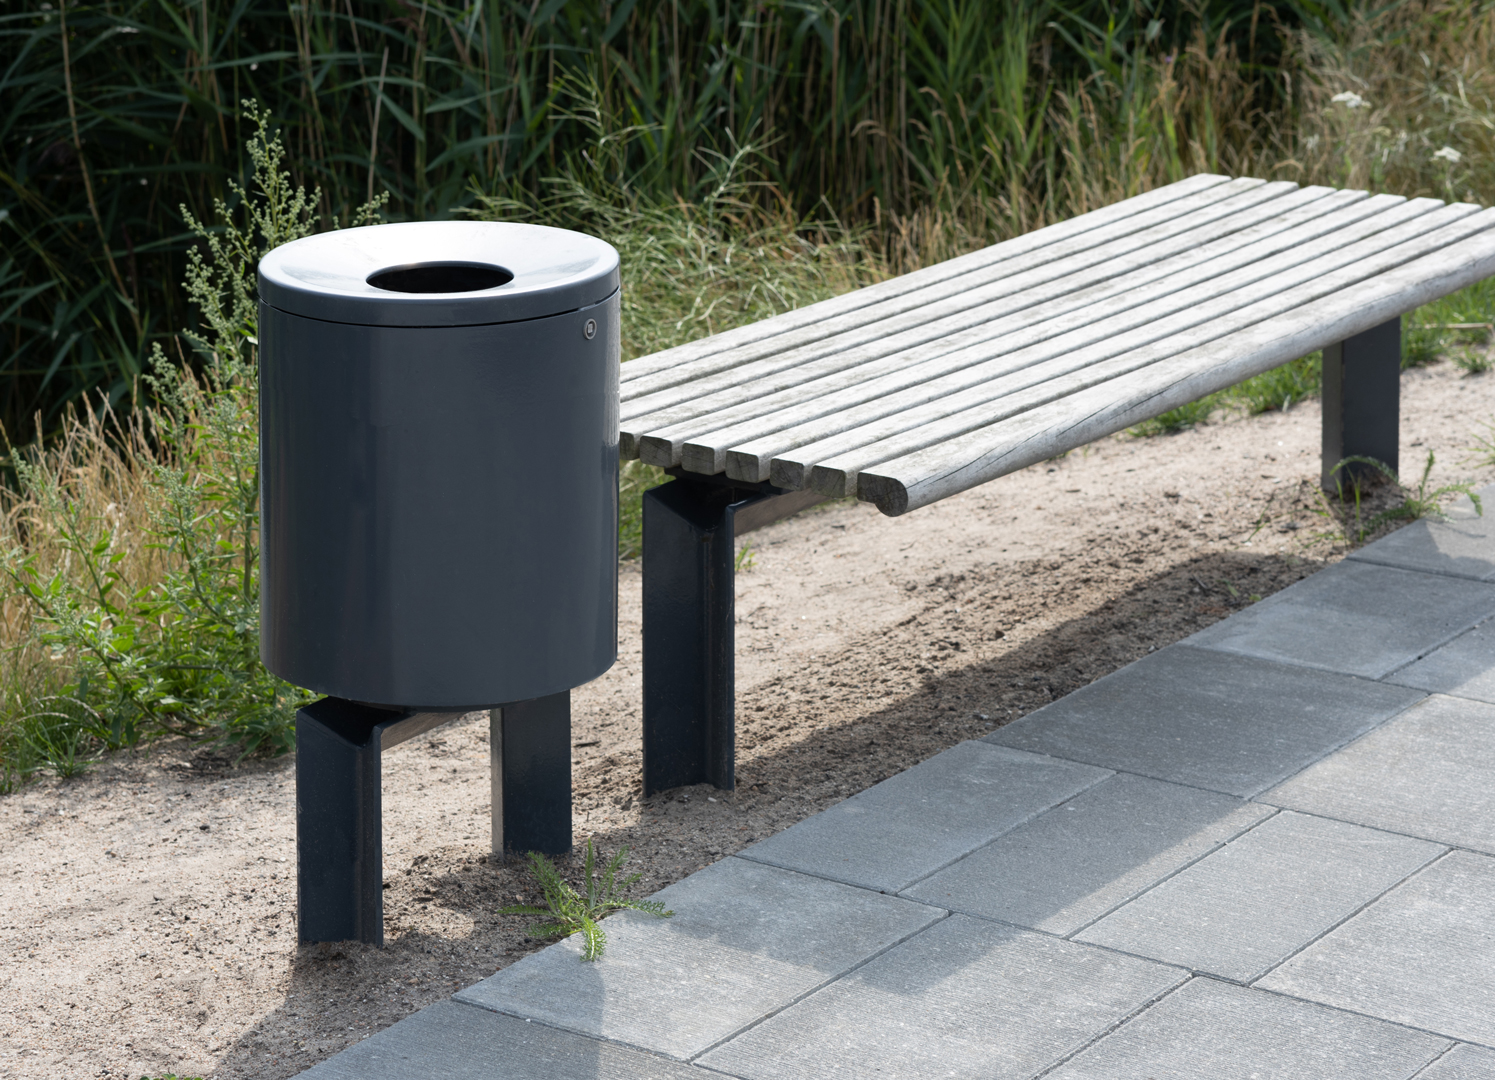 COMFORT litter bin seen next to COMFORT bench for urban spaces